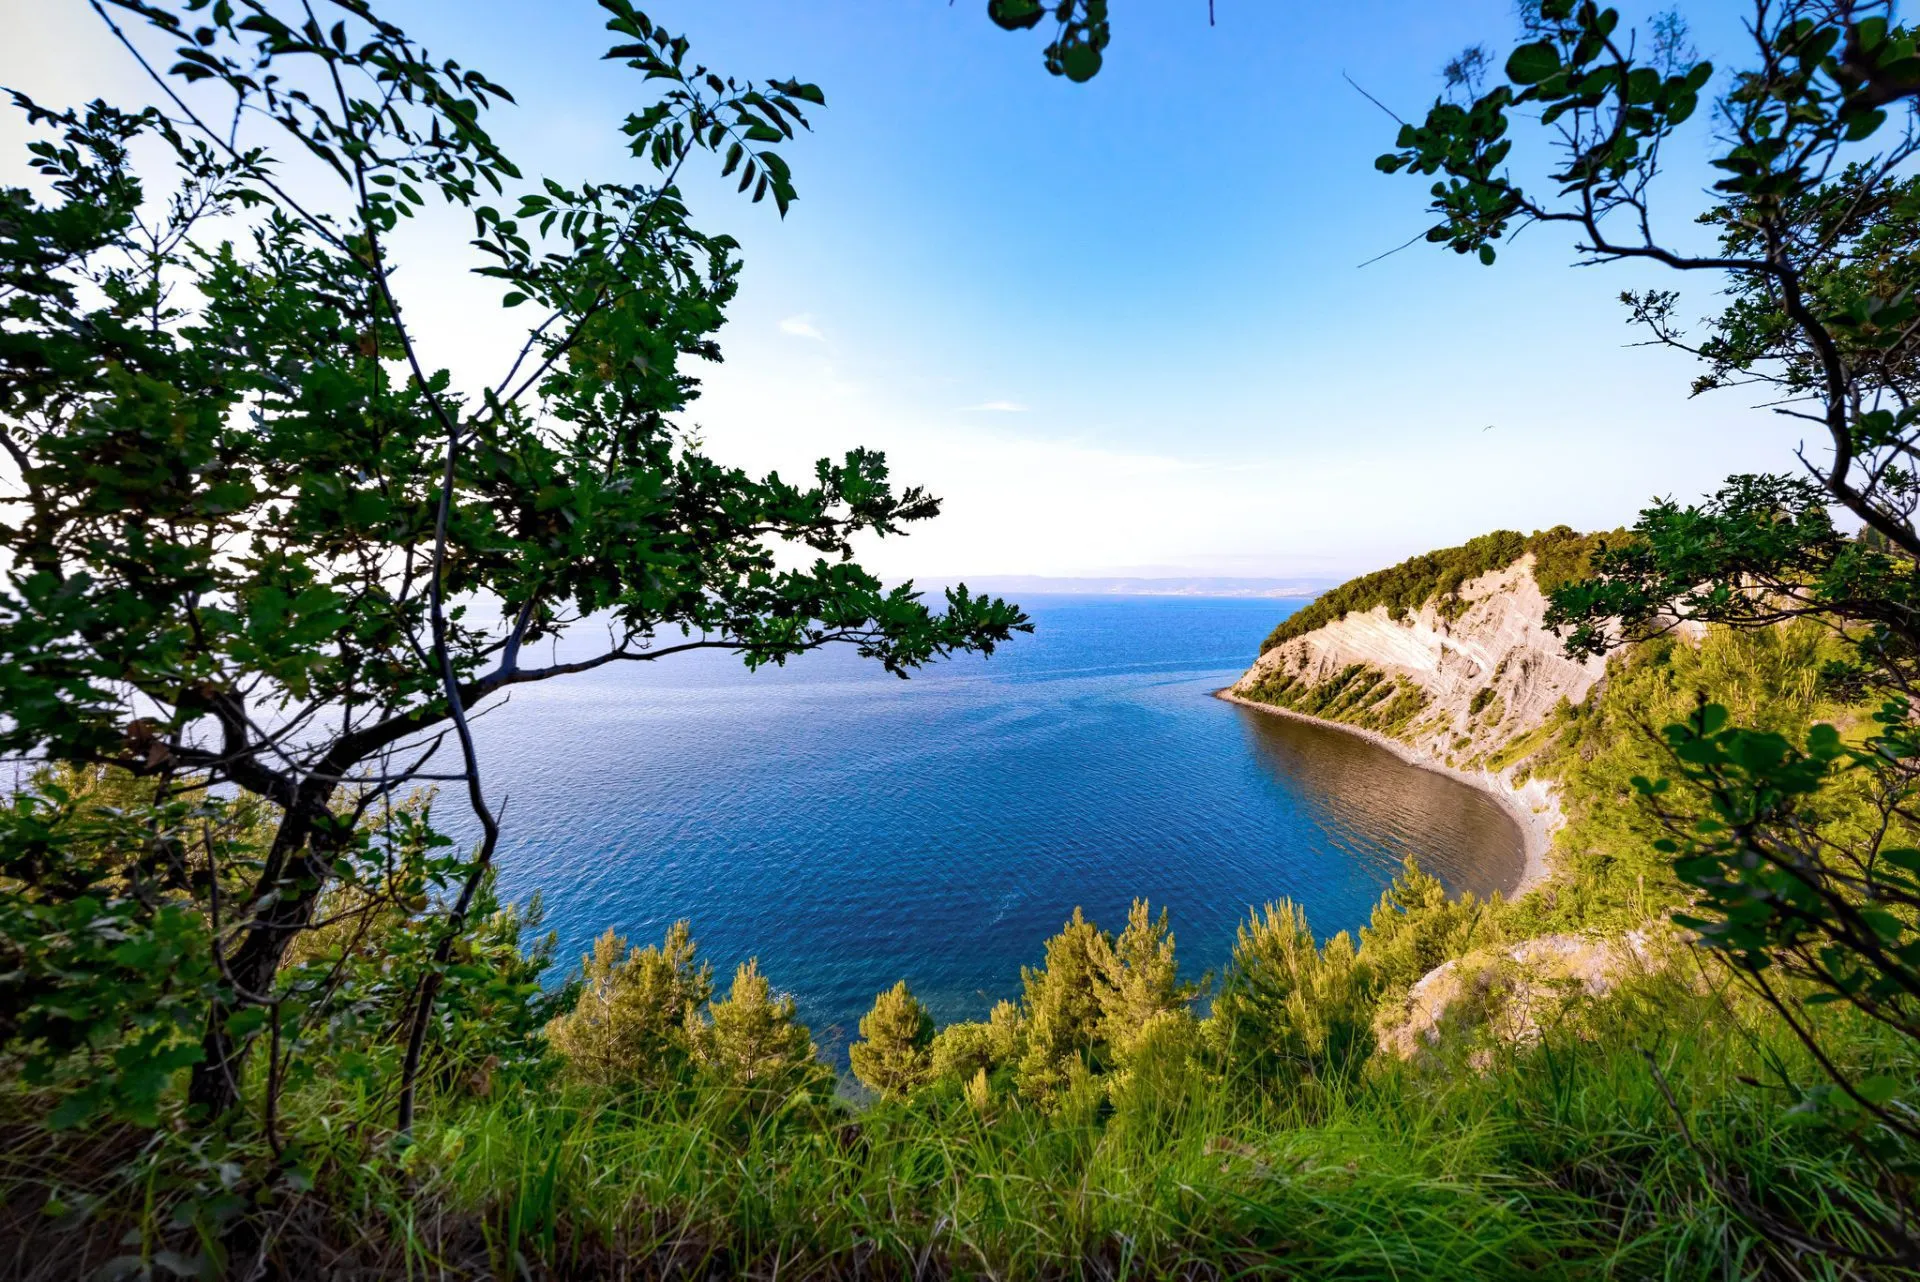 Strunjan-stranden på den slovenske kysten skalert 1